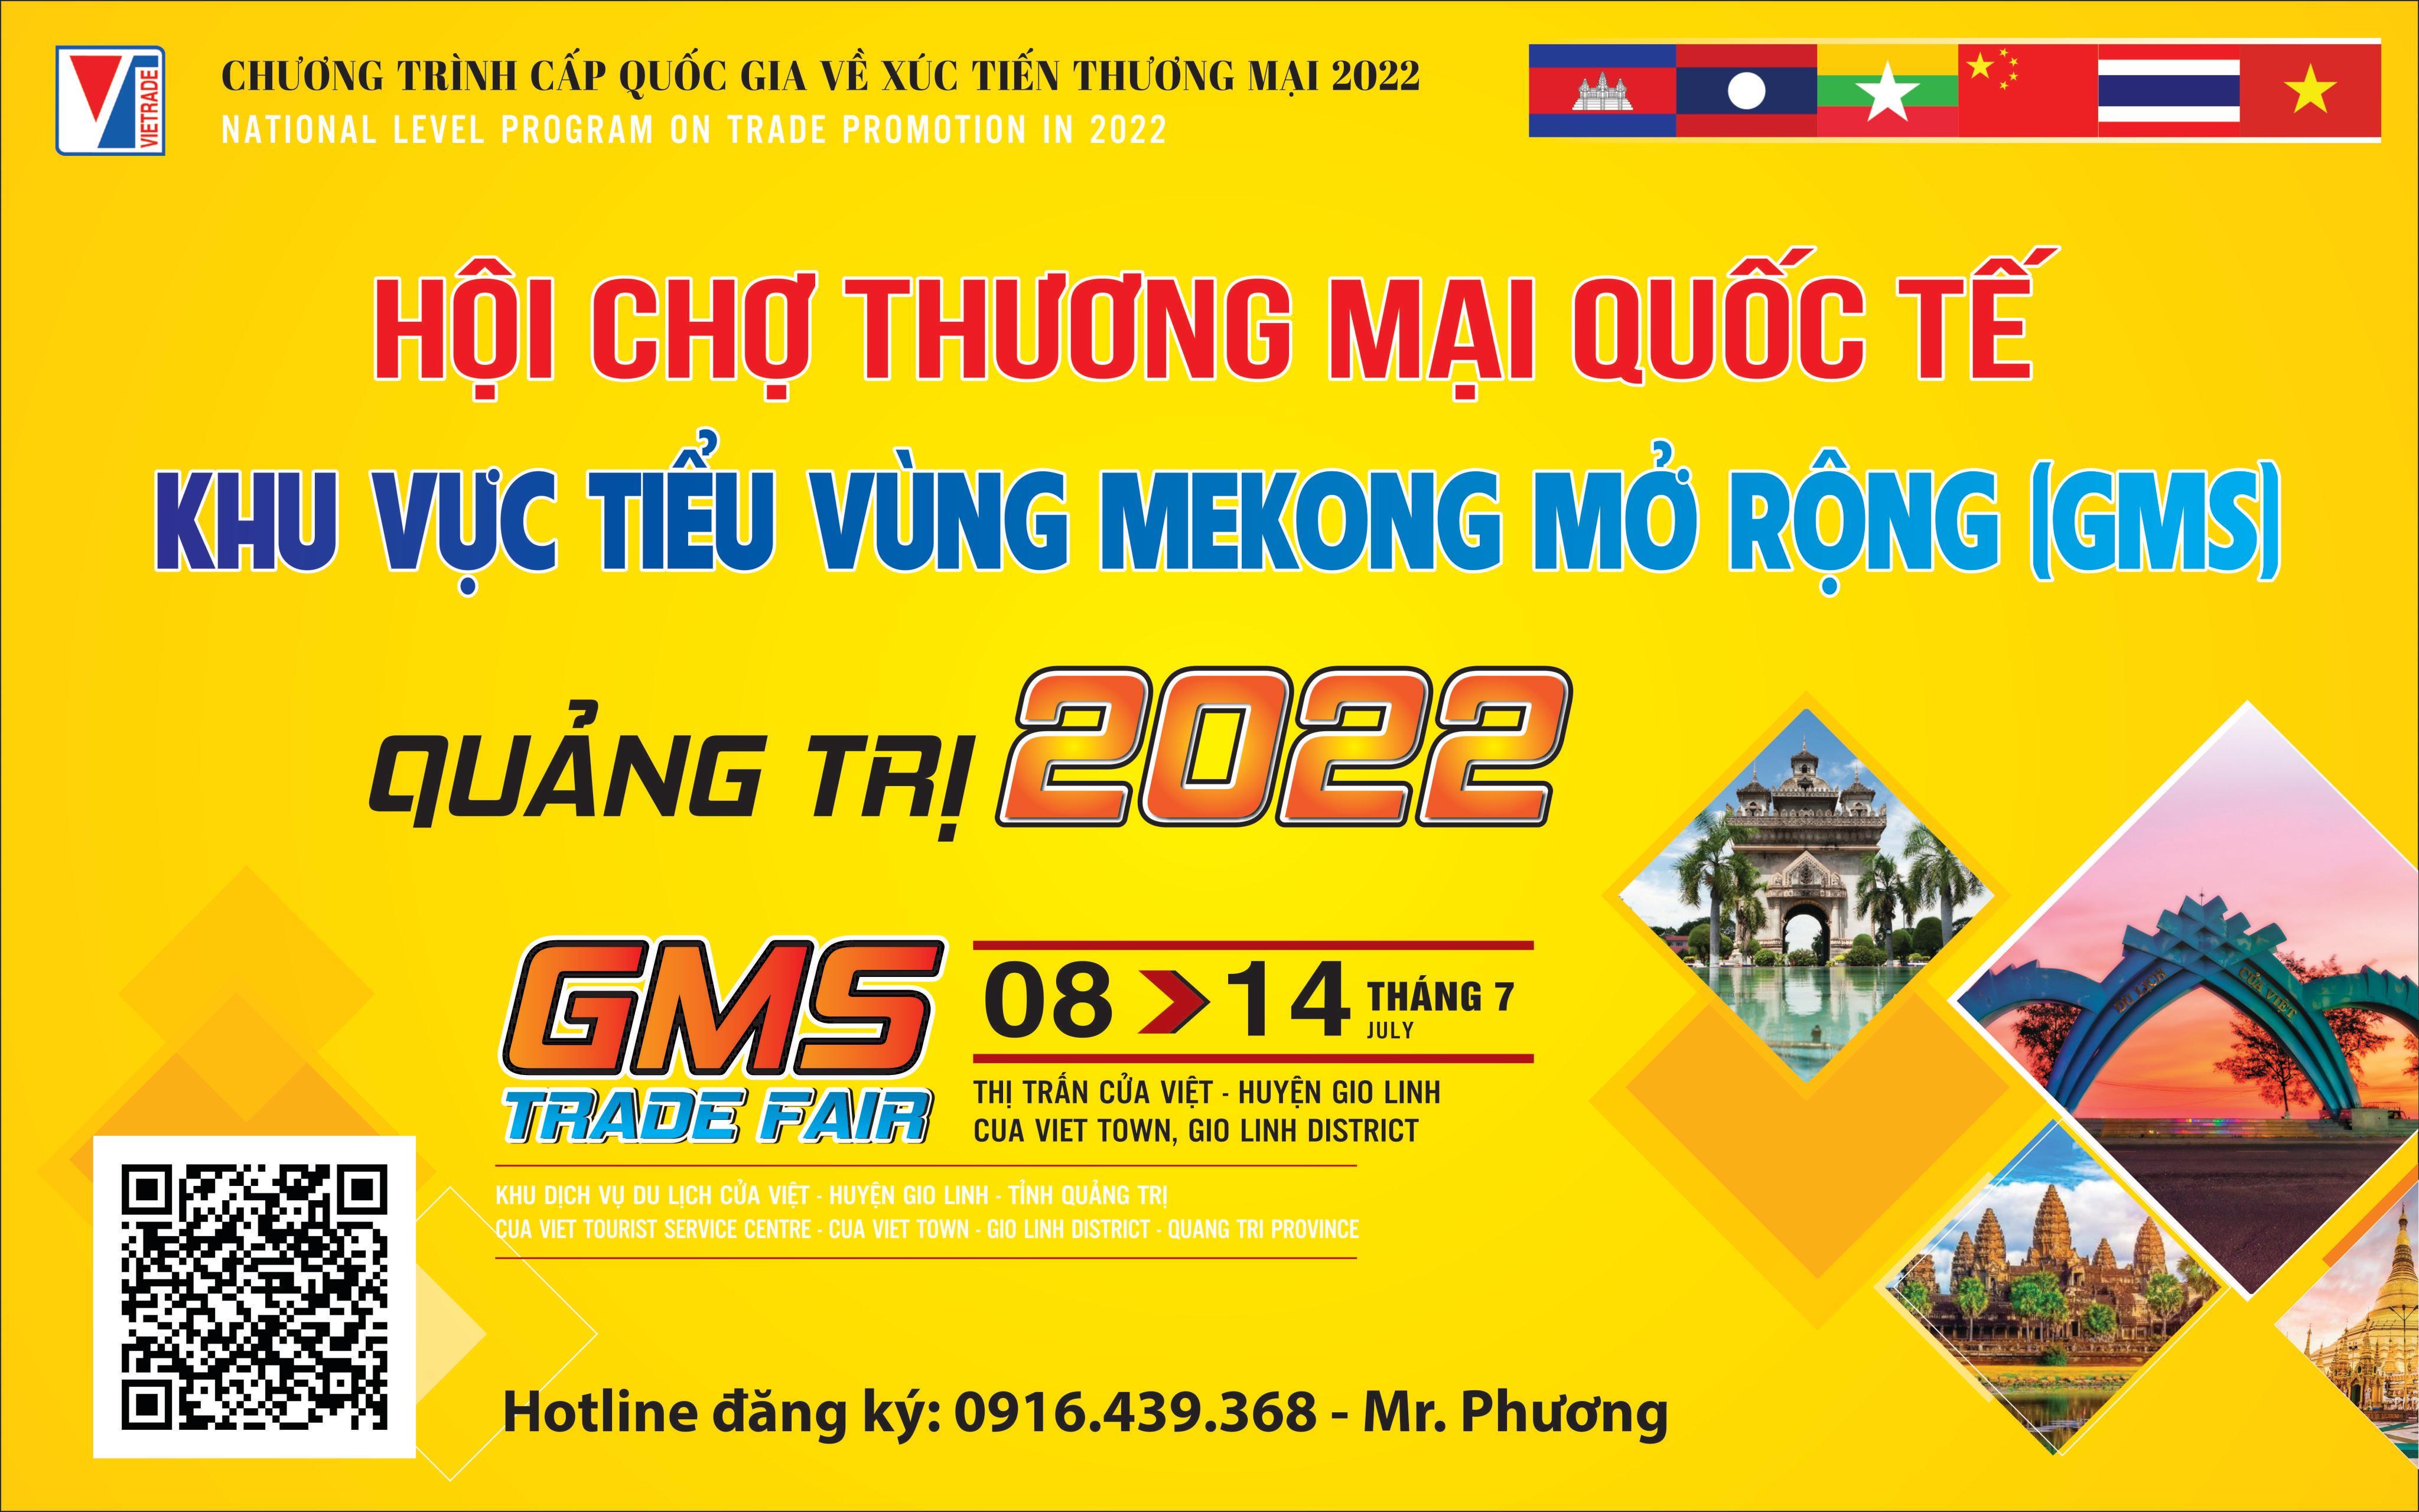 Thư mời tham gia Hội chợ Thương mại quốc tế Tiểu vùng Mekong mở rộng (GMS) - Quảng Trị 2022